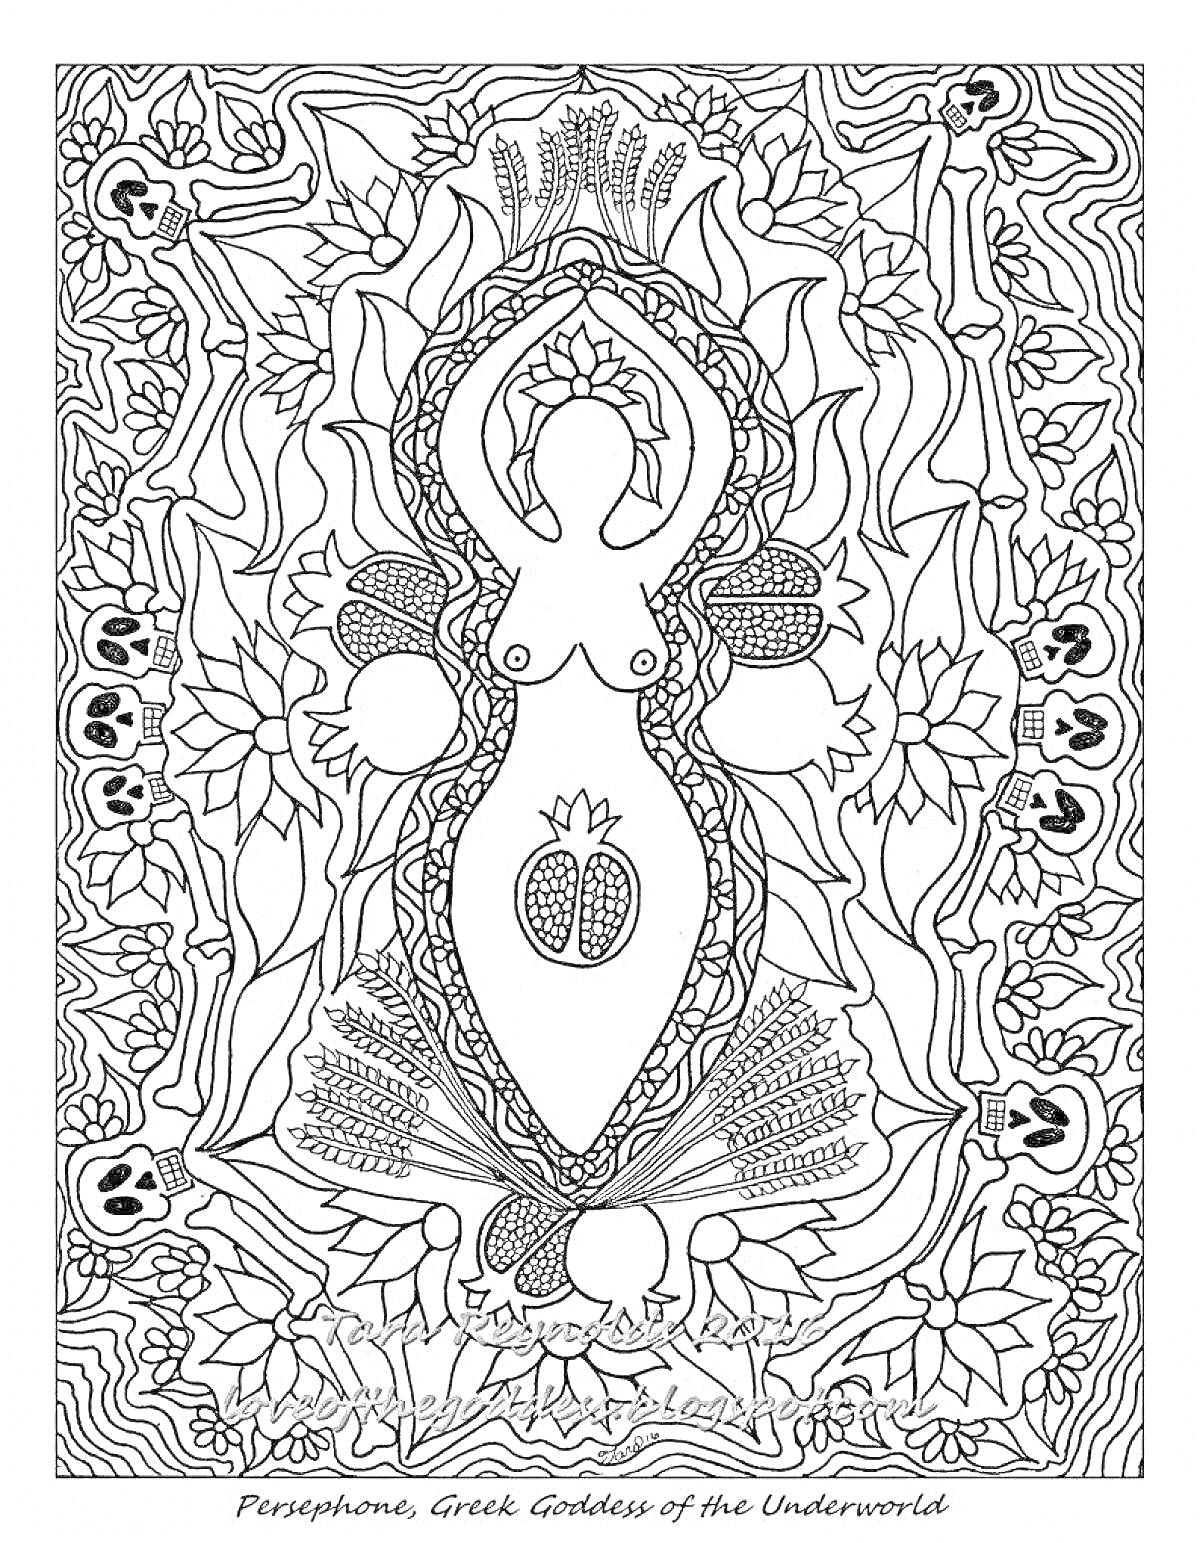 Раскраска Персефона, греческая богиня подземного мира, с гранатами, черепами, злаками, цветами и лозами